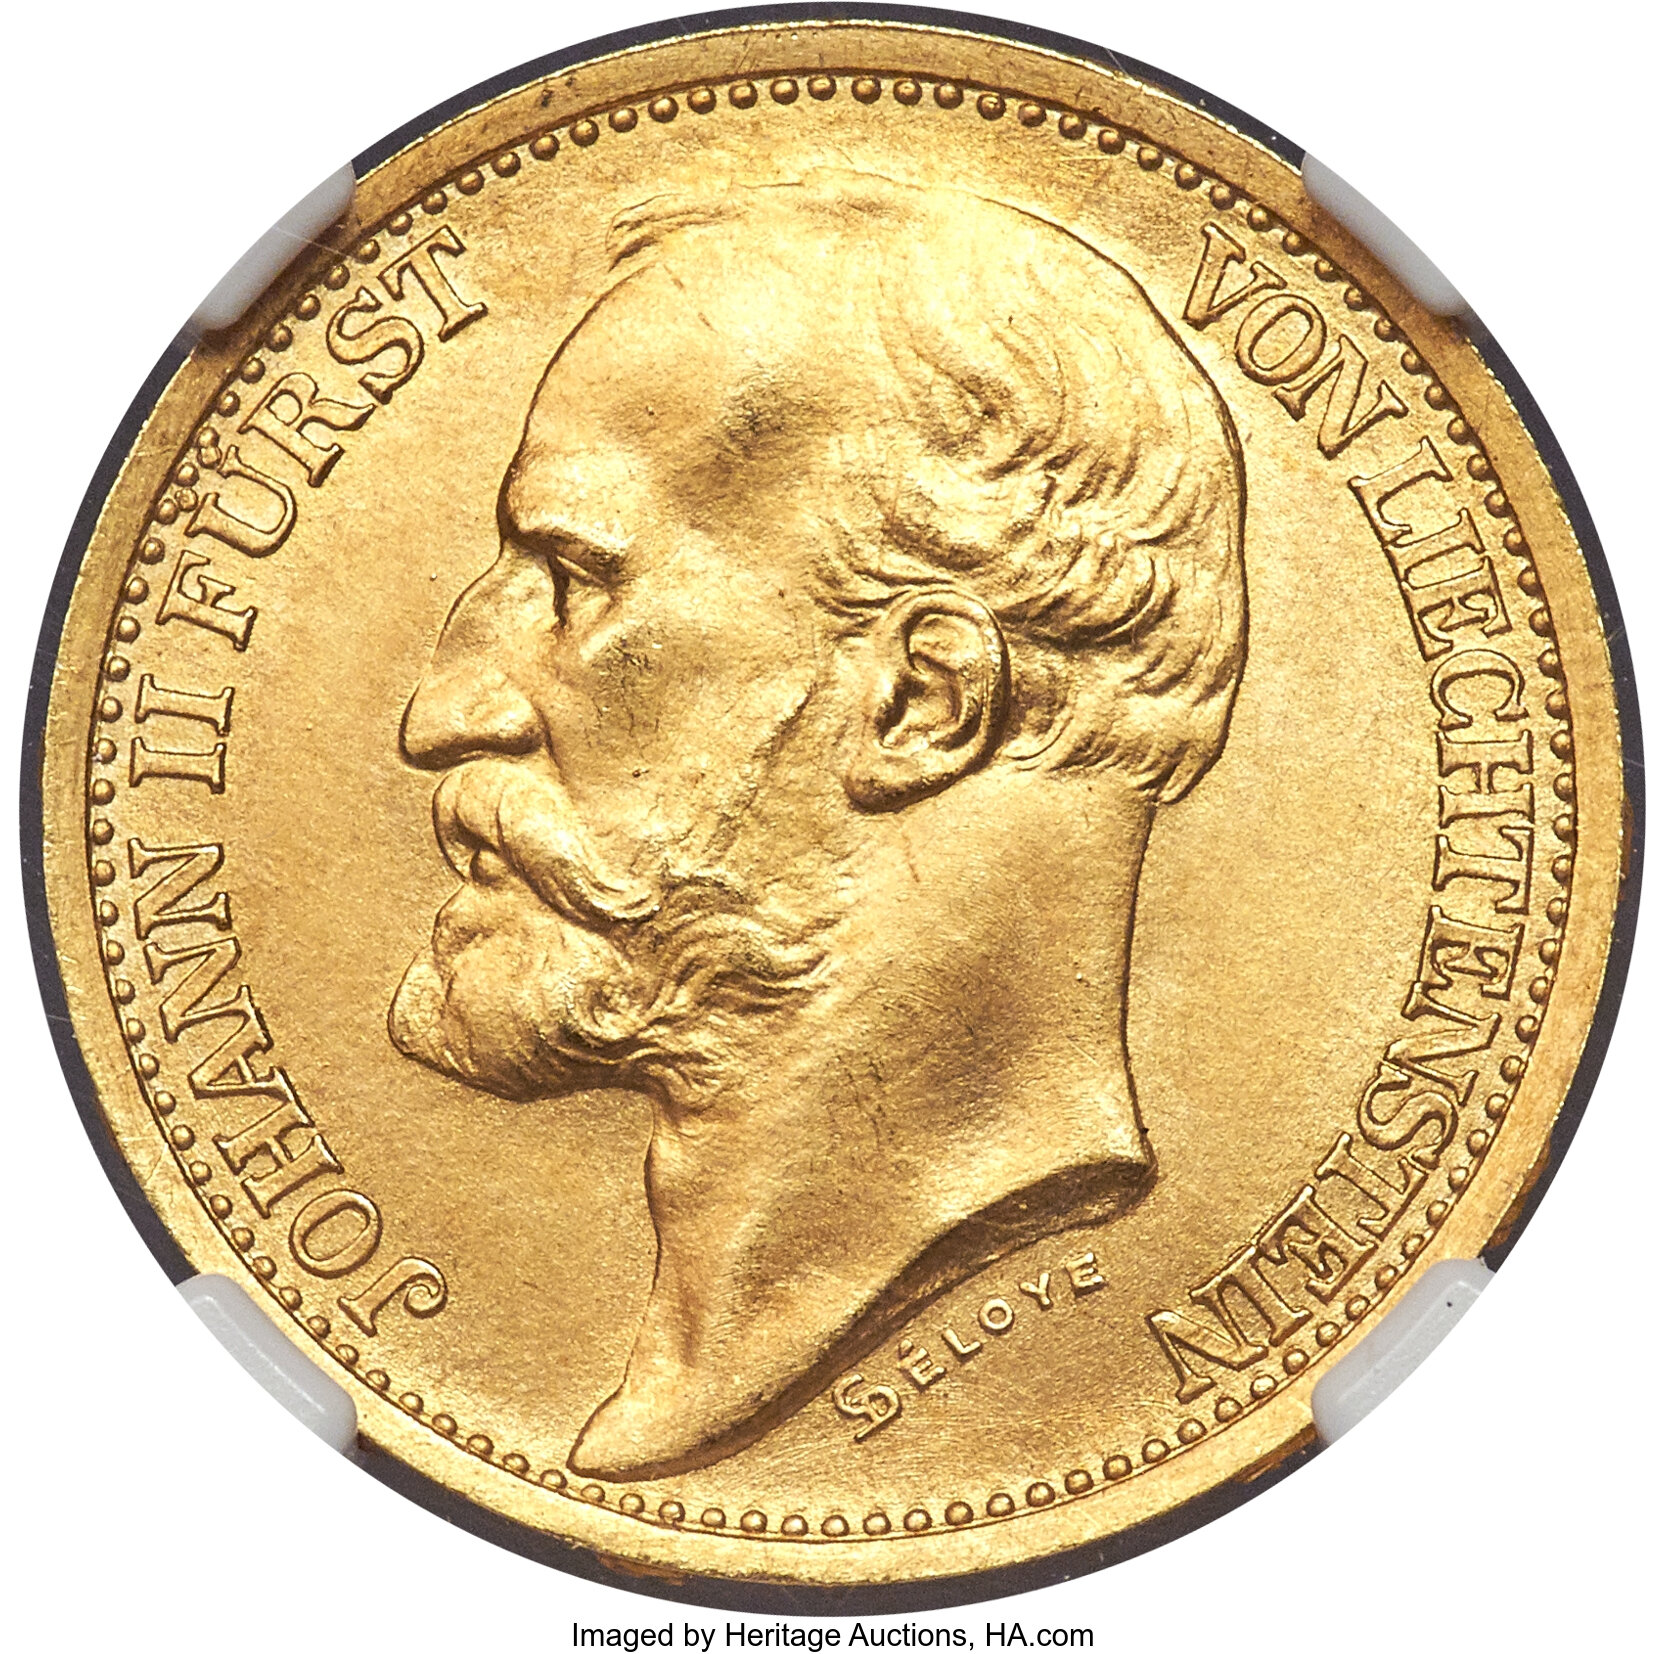 Liechtenstein: Johann II gold Essai 20 Kronen 1898 MS67 NGC, | Lot